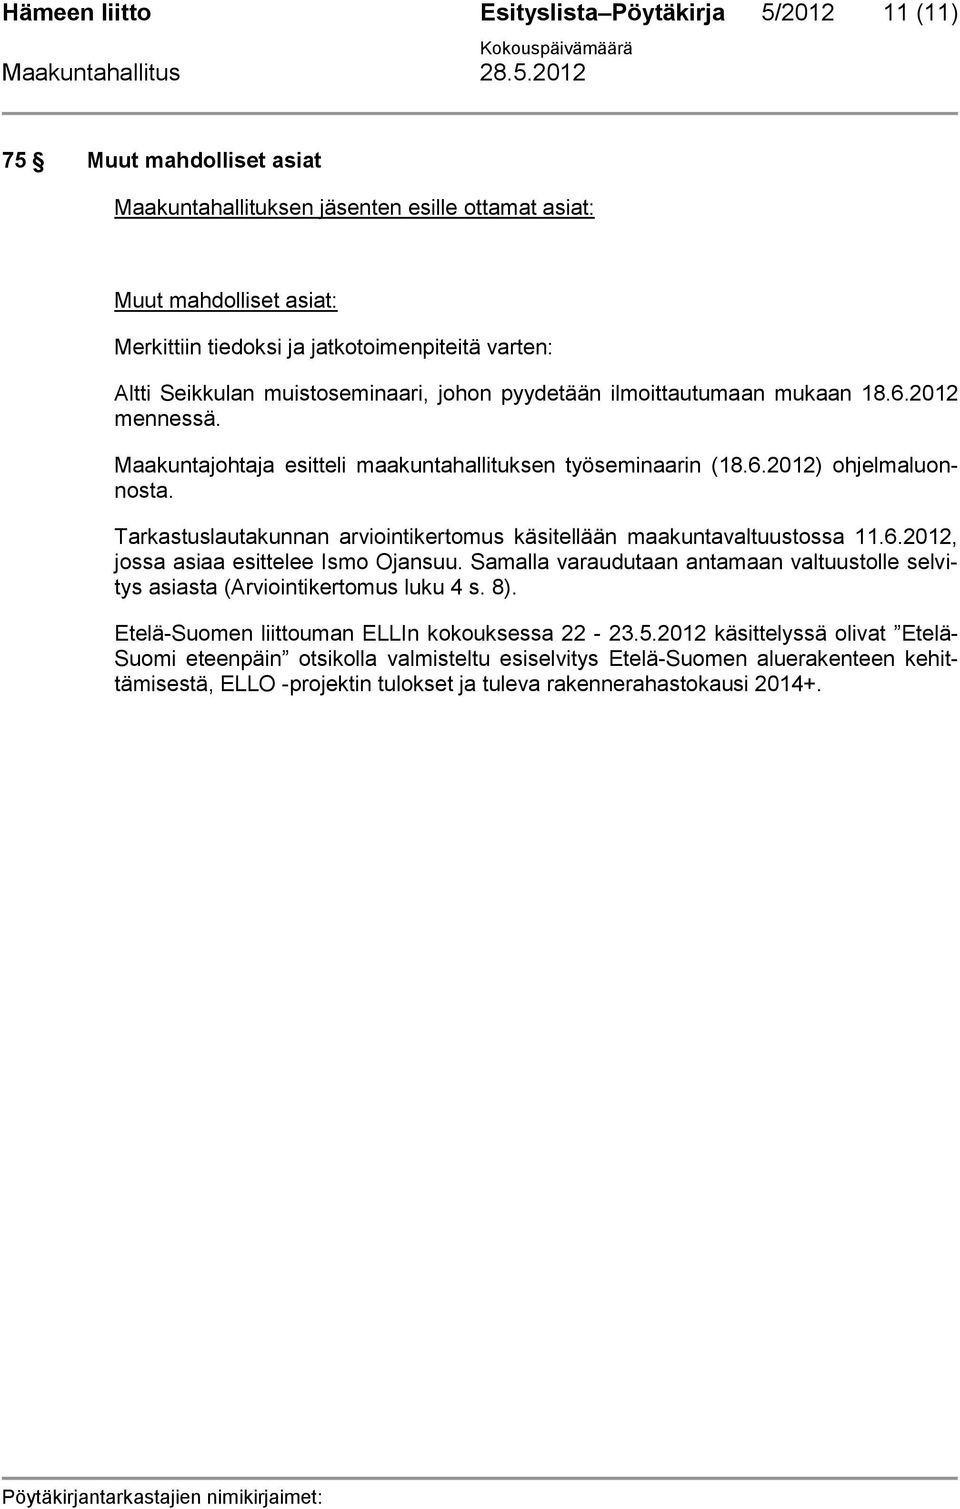 Tarkastuslautakunnan arviointikertomus käsitellään maakuntavaltuustossa 11.6.2012, jossa asiaa esittelee Ismo Ojansuu.